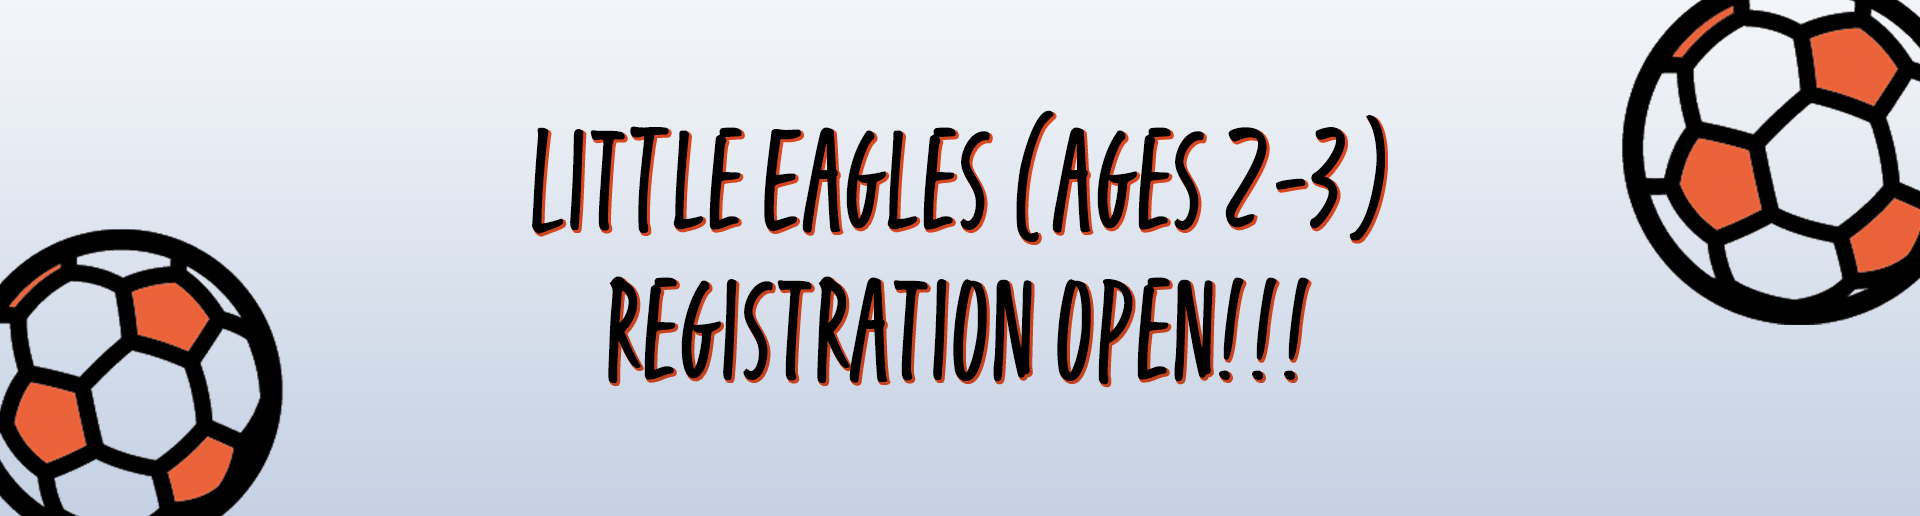 Sign up for Little Eagles!